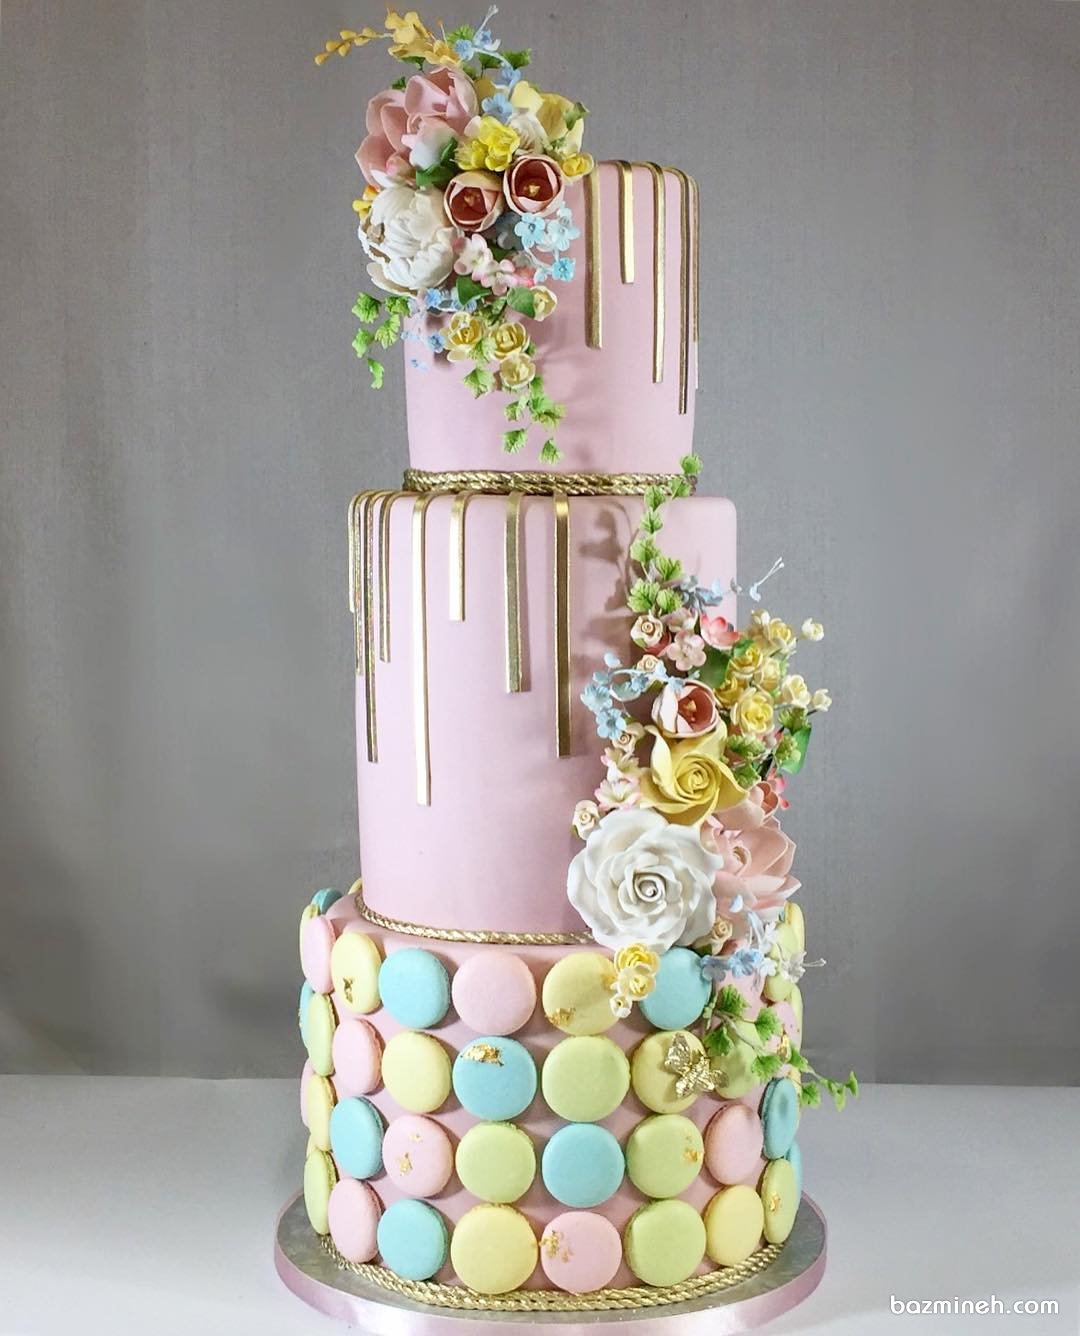 کیک سه طبقه جشن تولد دخترانه با تم صورتی و ایده جالب تزئین آن با ماکارون های رنگی 